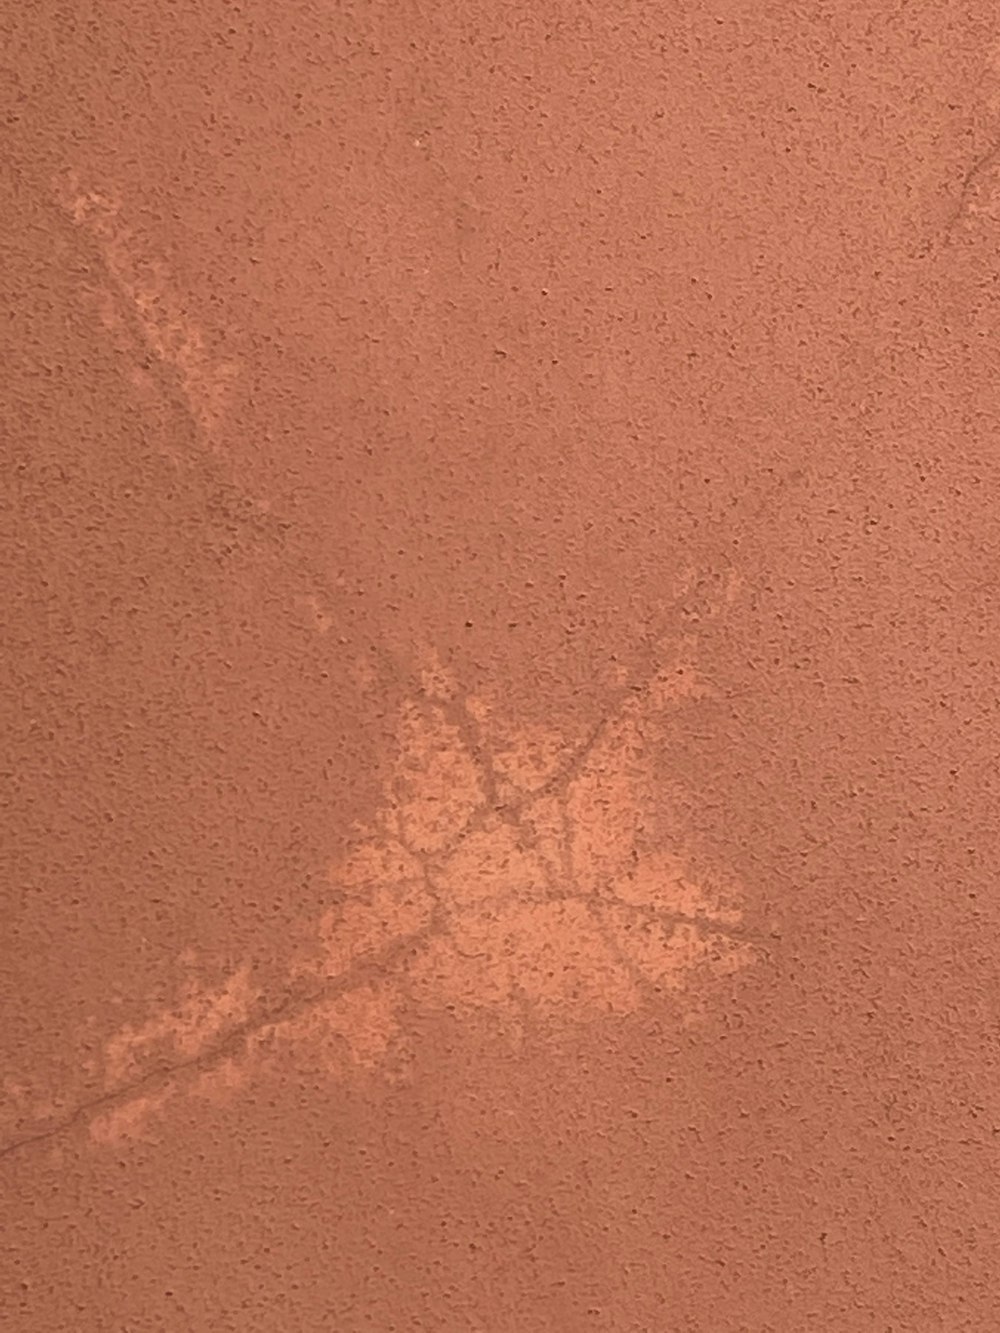 uma imagem das pegadas de uma pessoa na areia